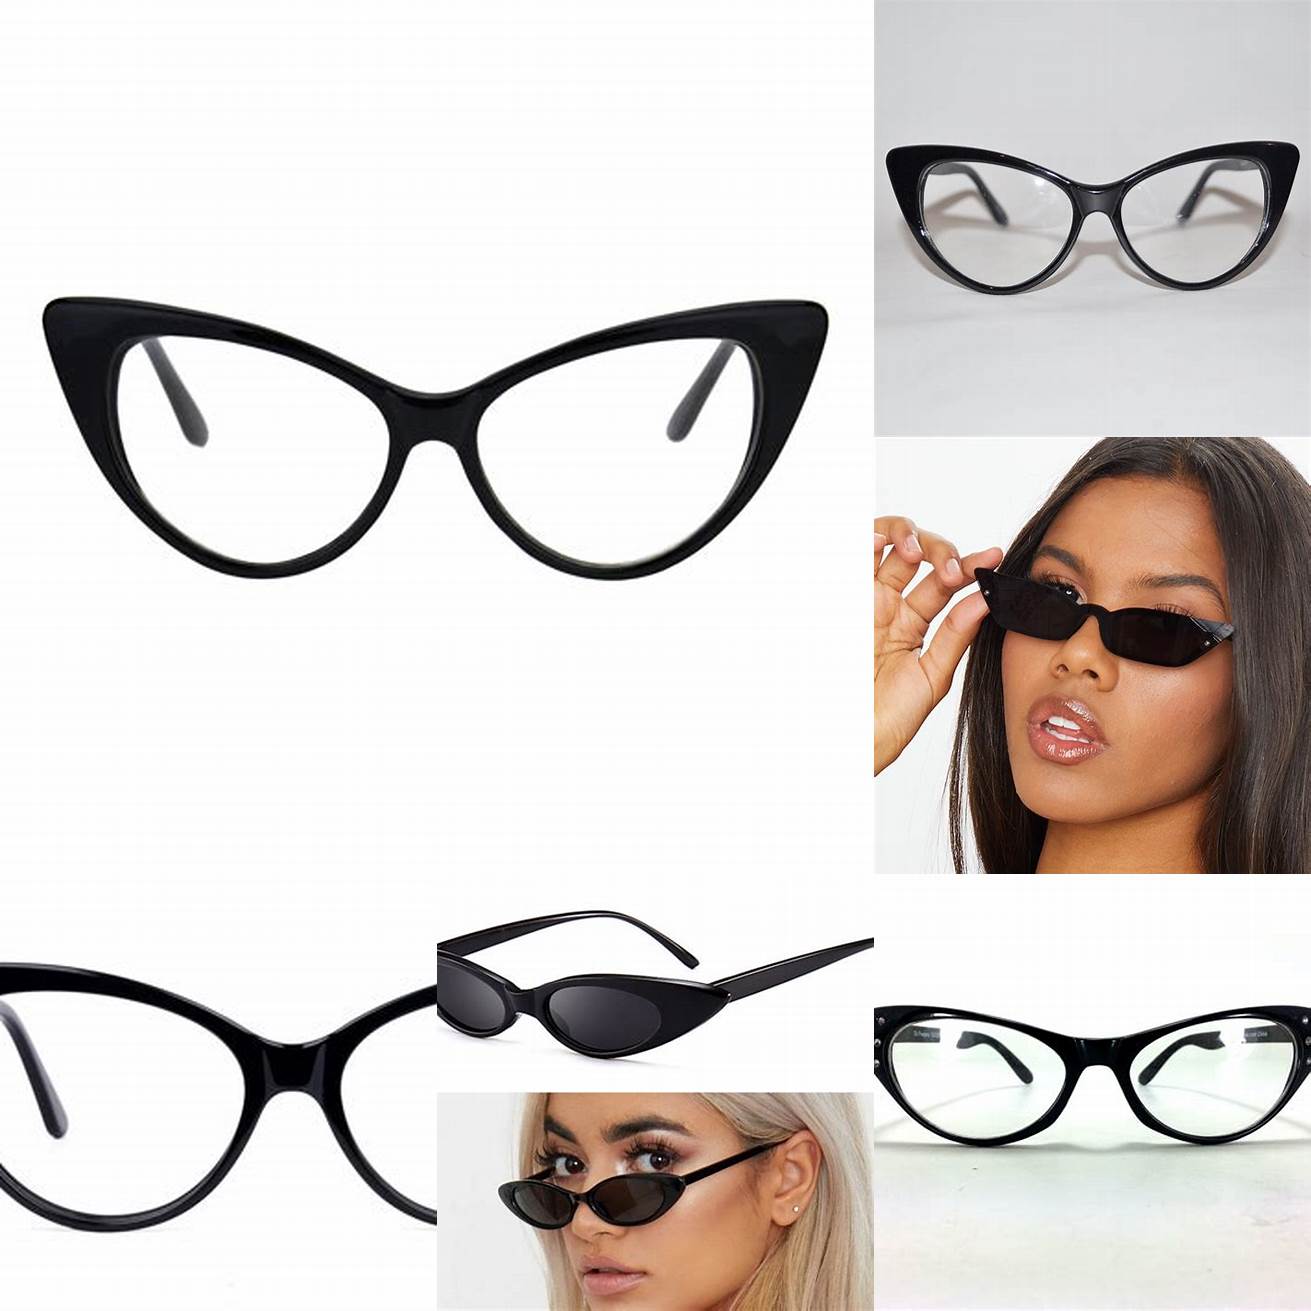 1 Black Cat Eye Glasses